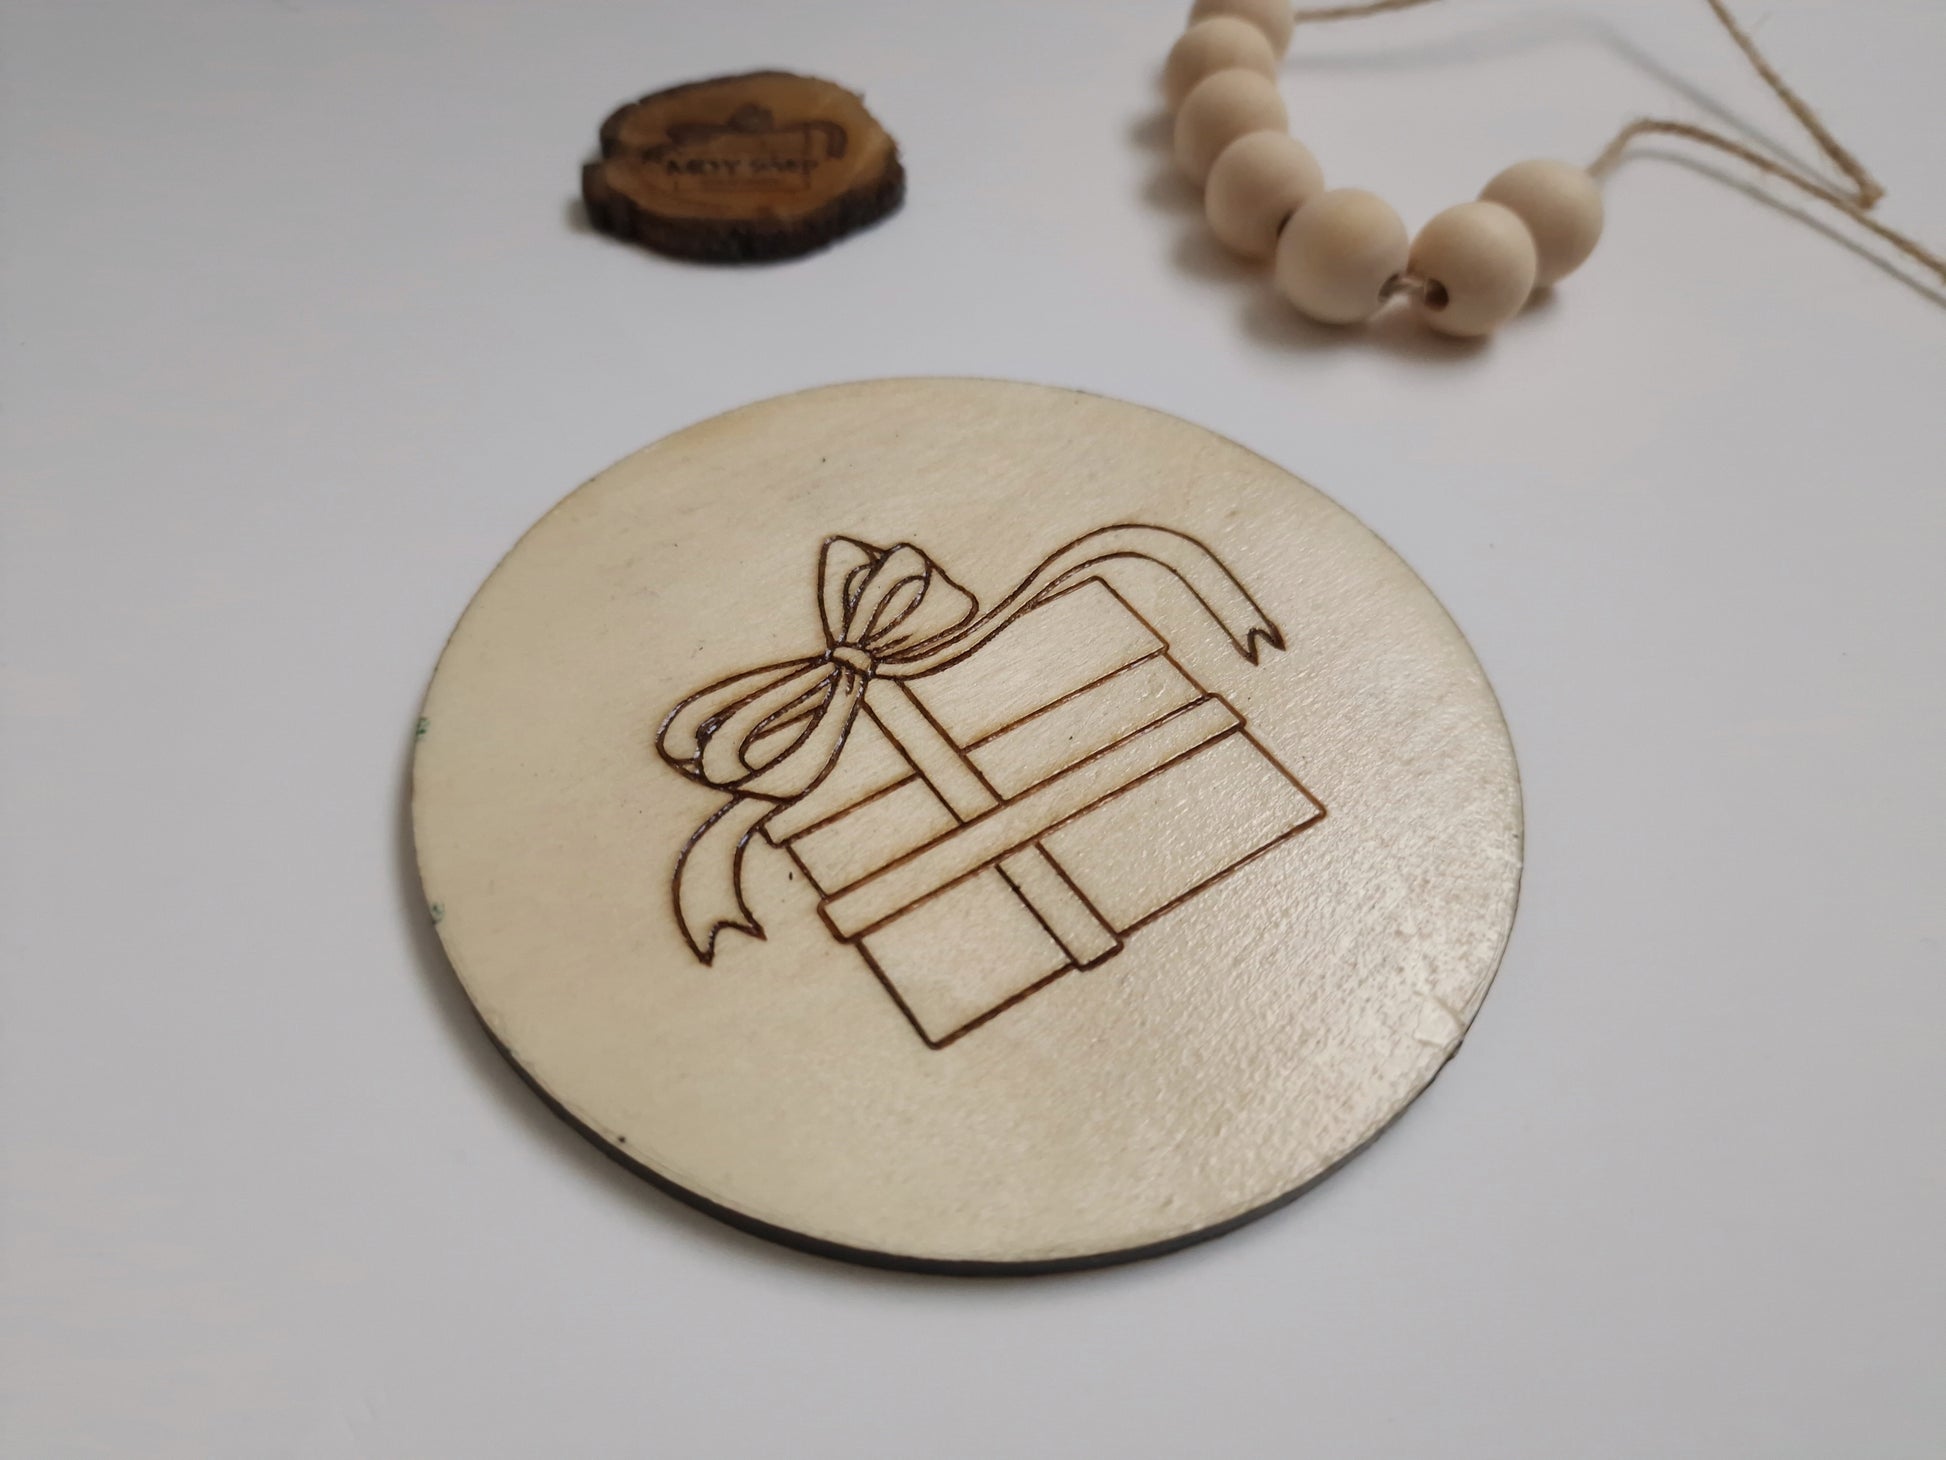 Suport pentru cana sau pahar (coasters) realizat din lemn. Acesta se poate personaliza cu logo-ul companiei, un mesaj text sau o imagine.